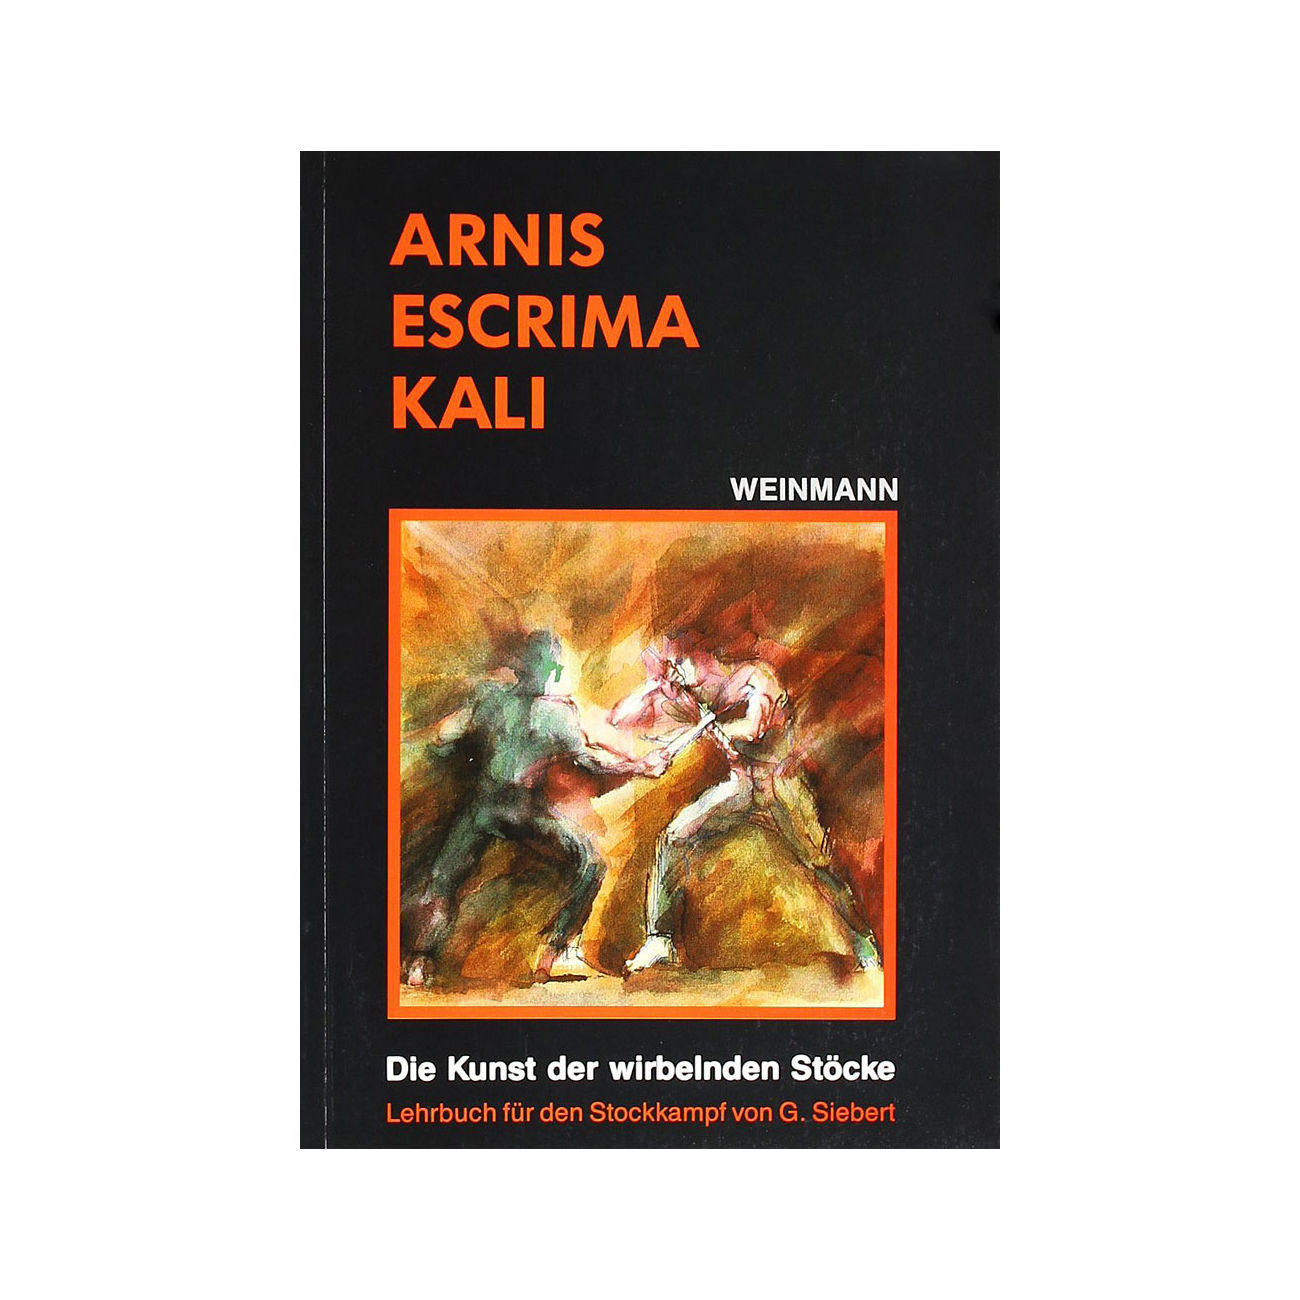 Arnis, Escrima, Kali - Die Kunst der wirbelnden Stöcke Buch